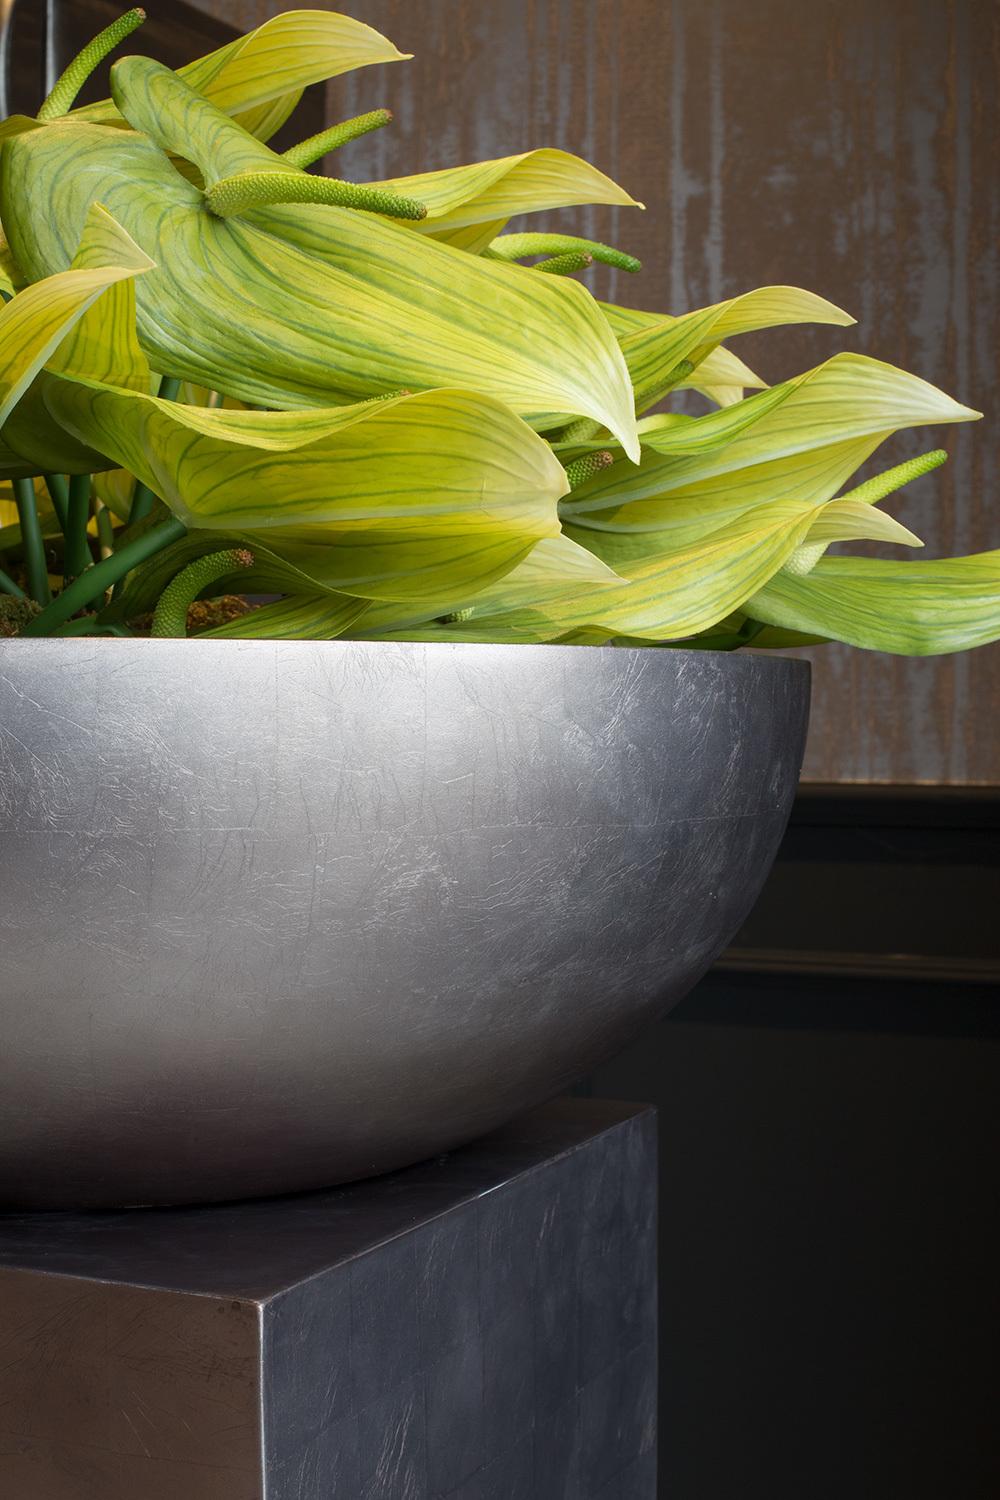 ROYAL bowl, 42/14 cm, titan grey